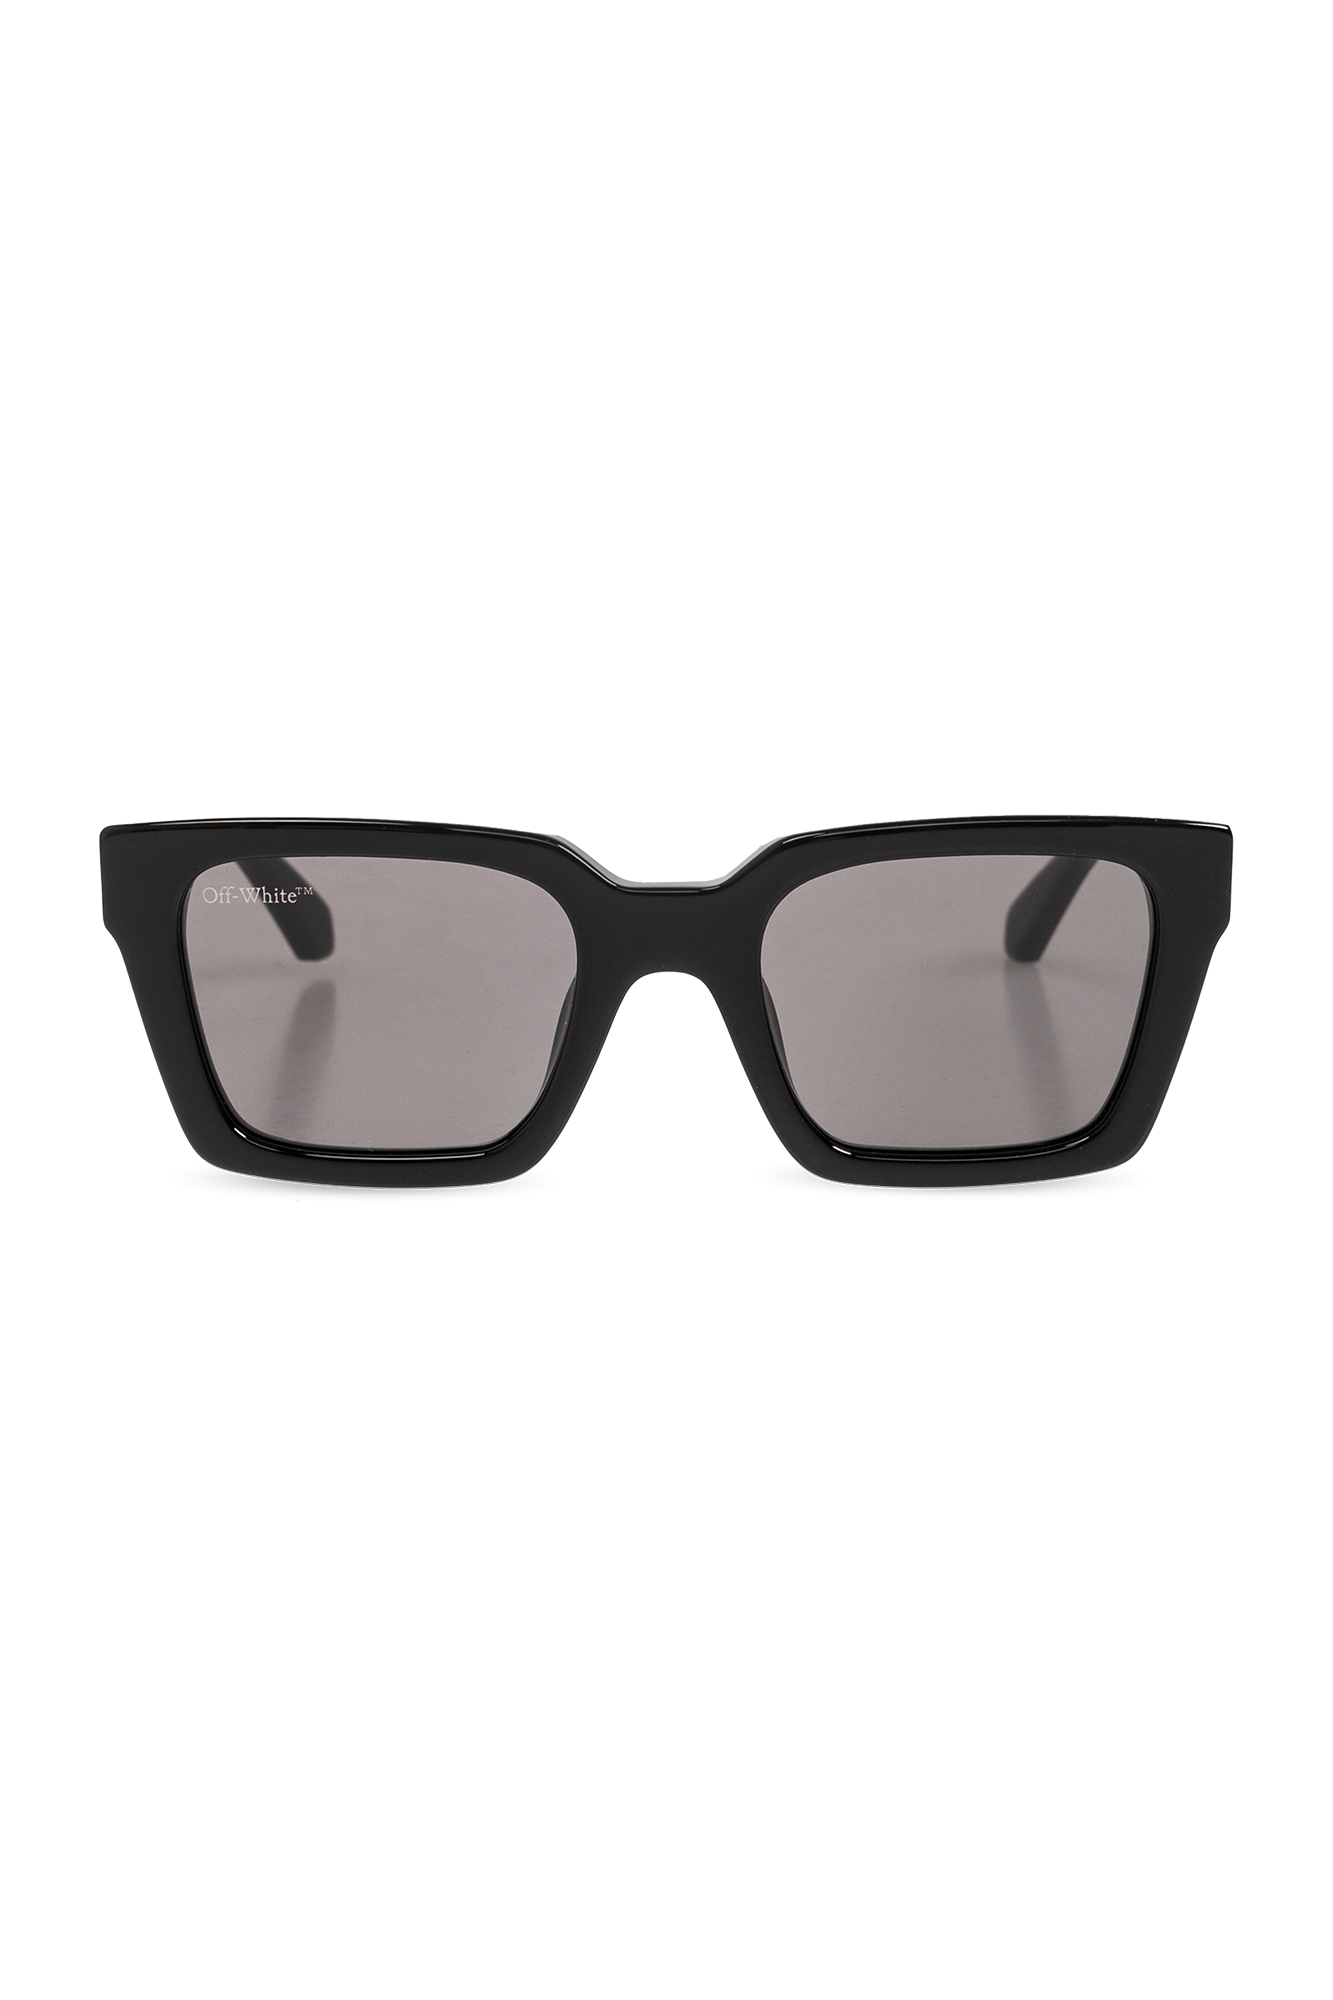 Palermo Sunglasses in black